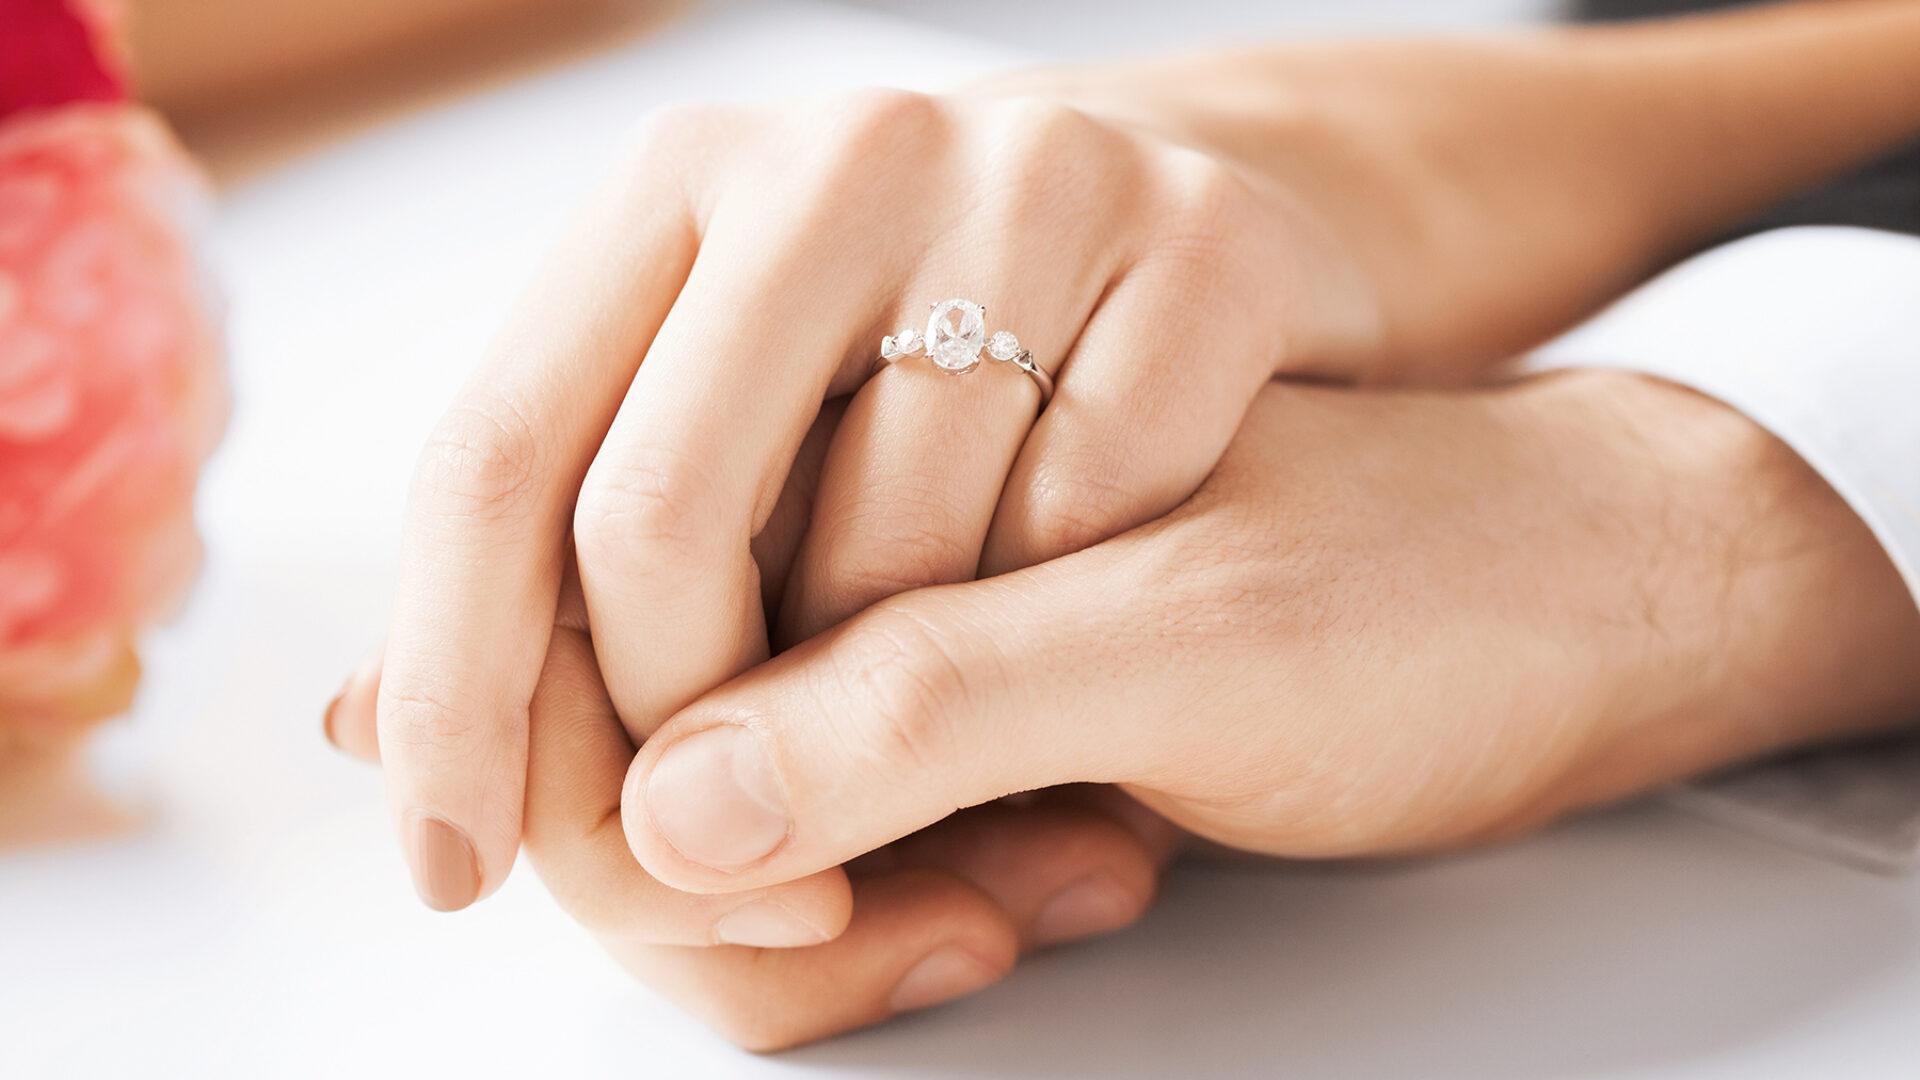 Con gái đeo nhẫn cưới tay nào mới đúng?